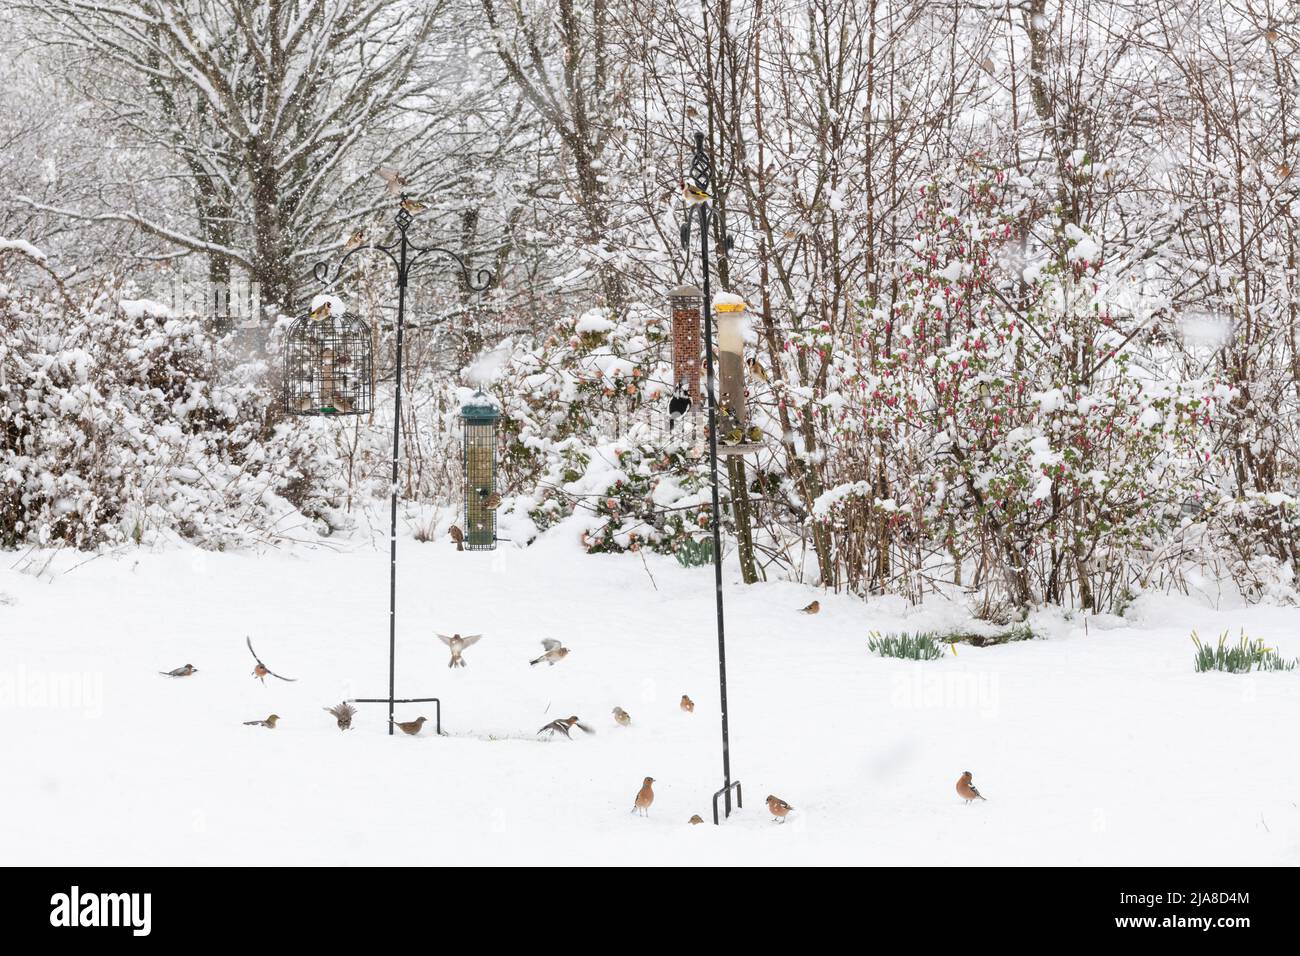 Varios pájaros del jardín (Goldfinches, gorriones del árbol, Chaffinches, Siskins, Dunnocks y un gran pájaro de madera manchada) en los alimentadores del pájaro en una ducha de la nieve Foto de stock